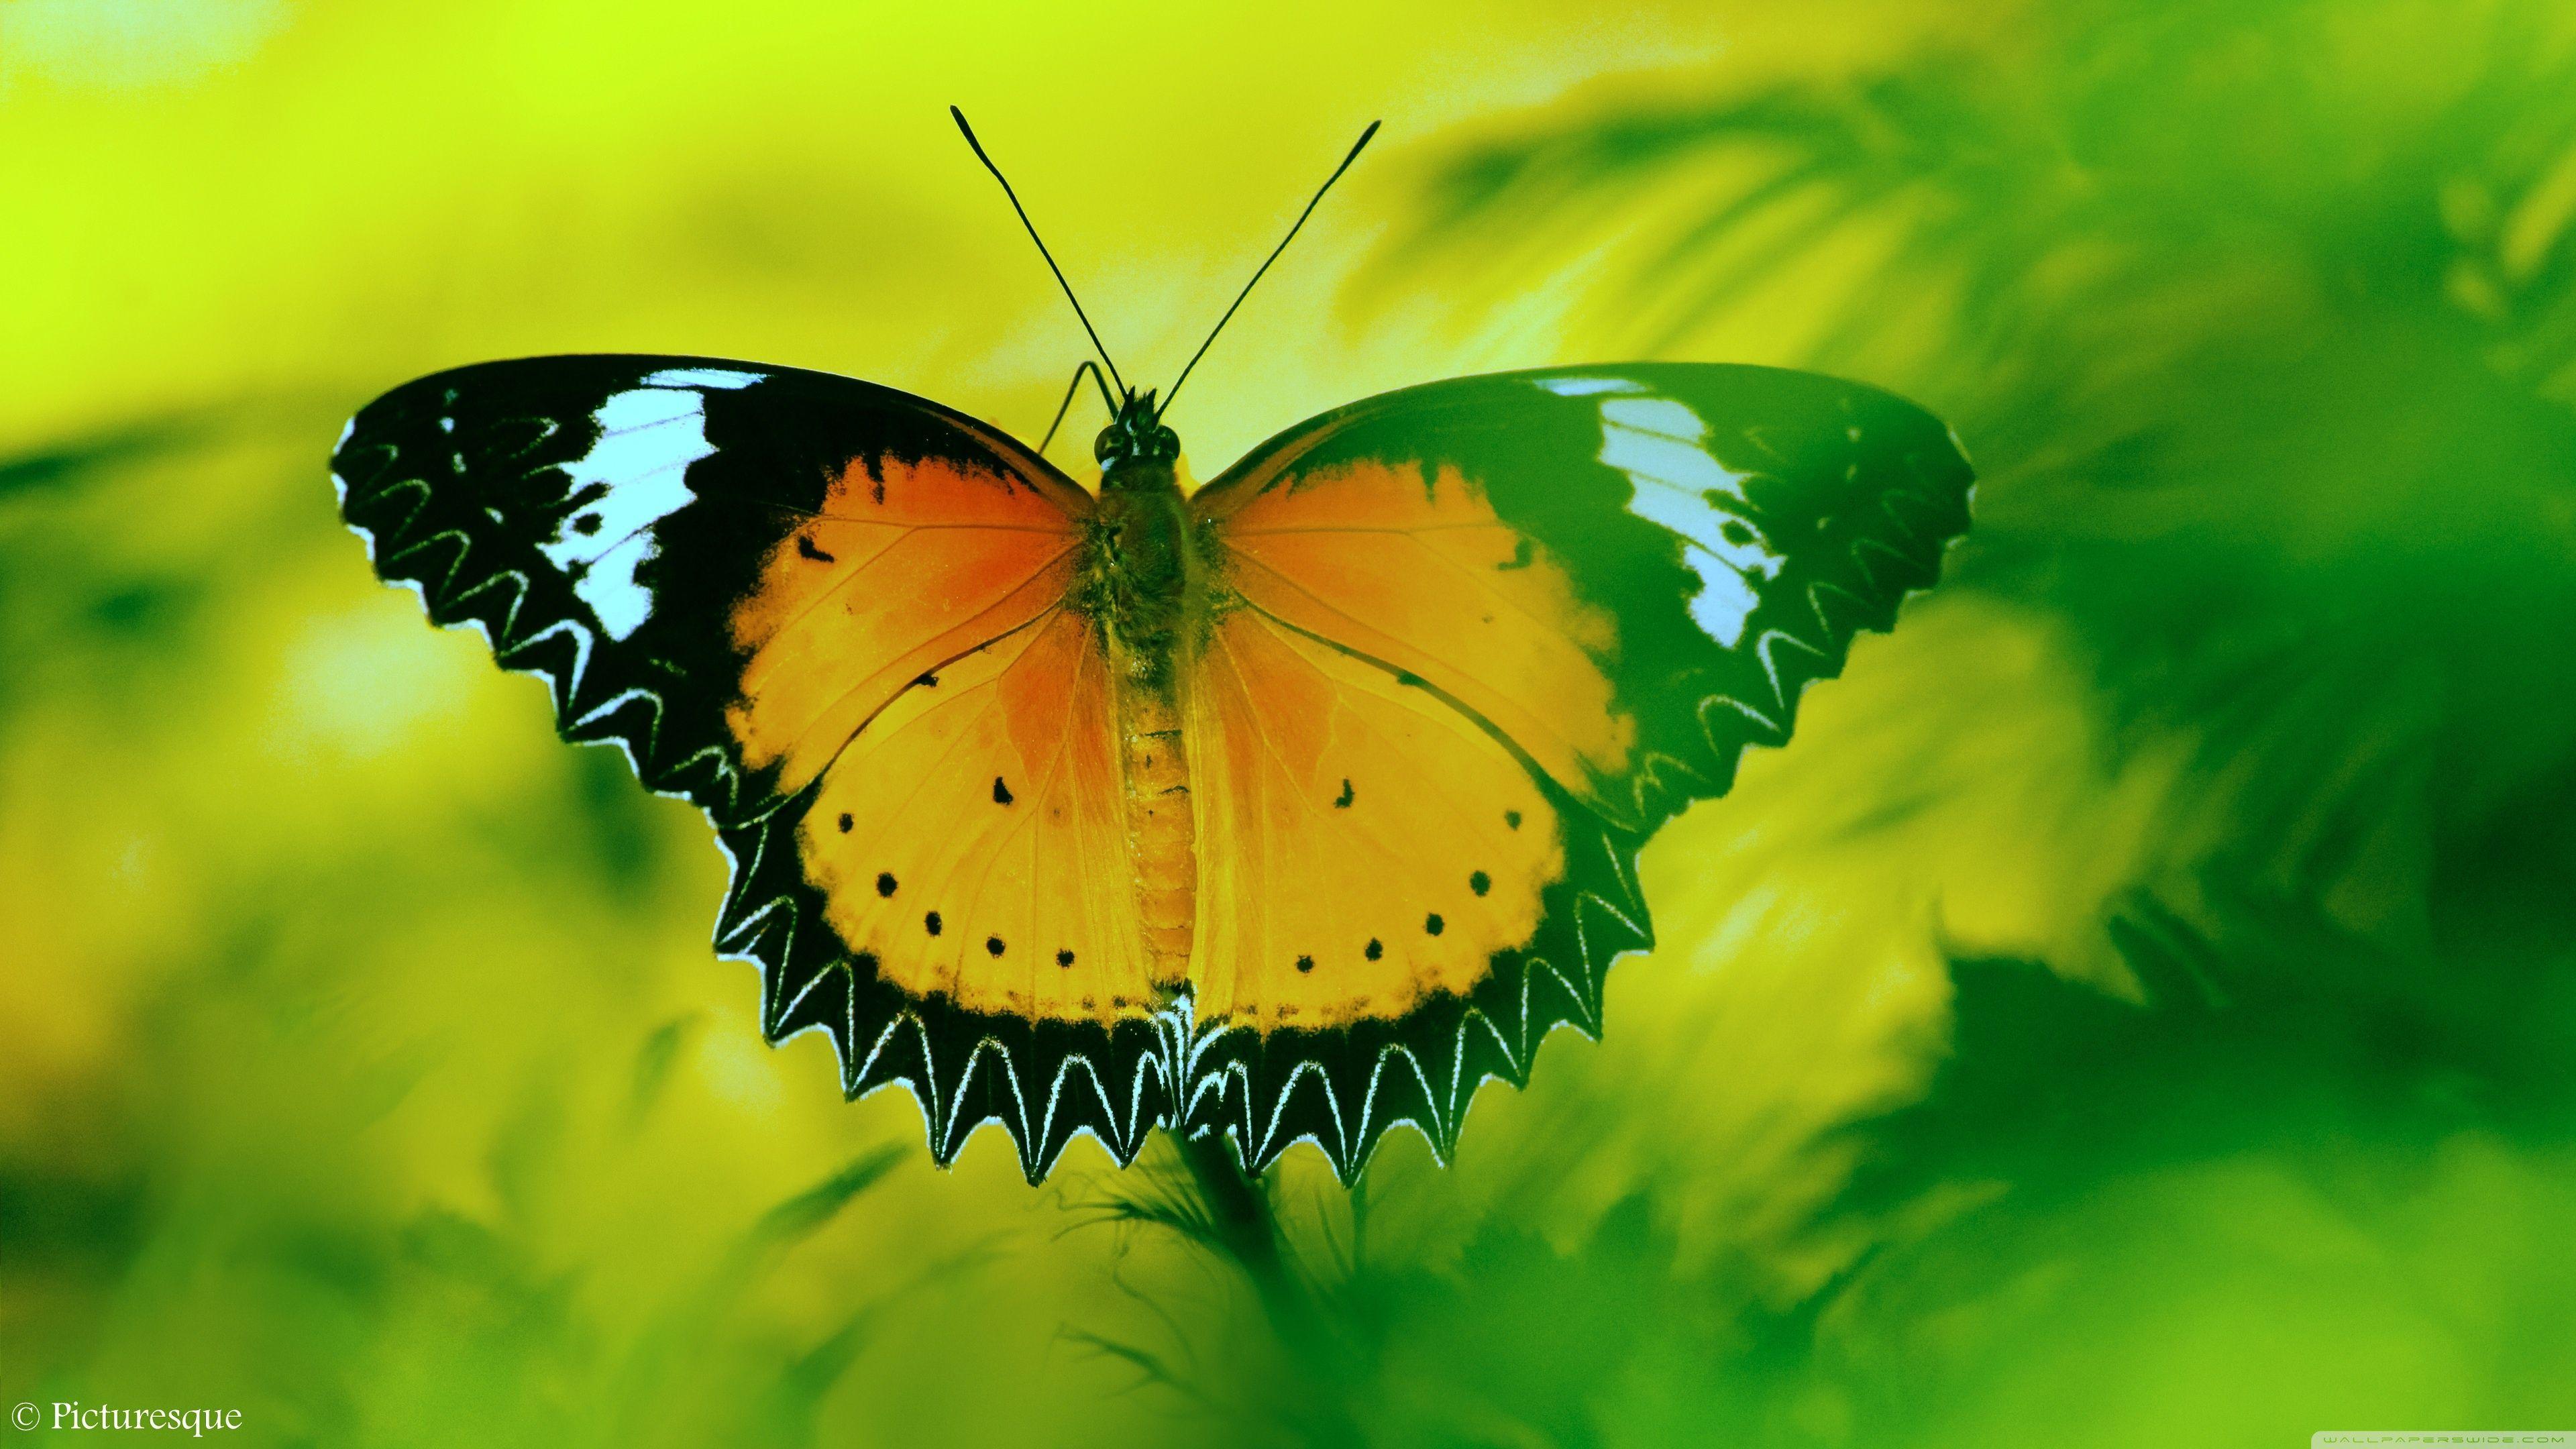 4K Butterfly Wallpapers - Top Free 4K Butterfly ...